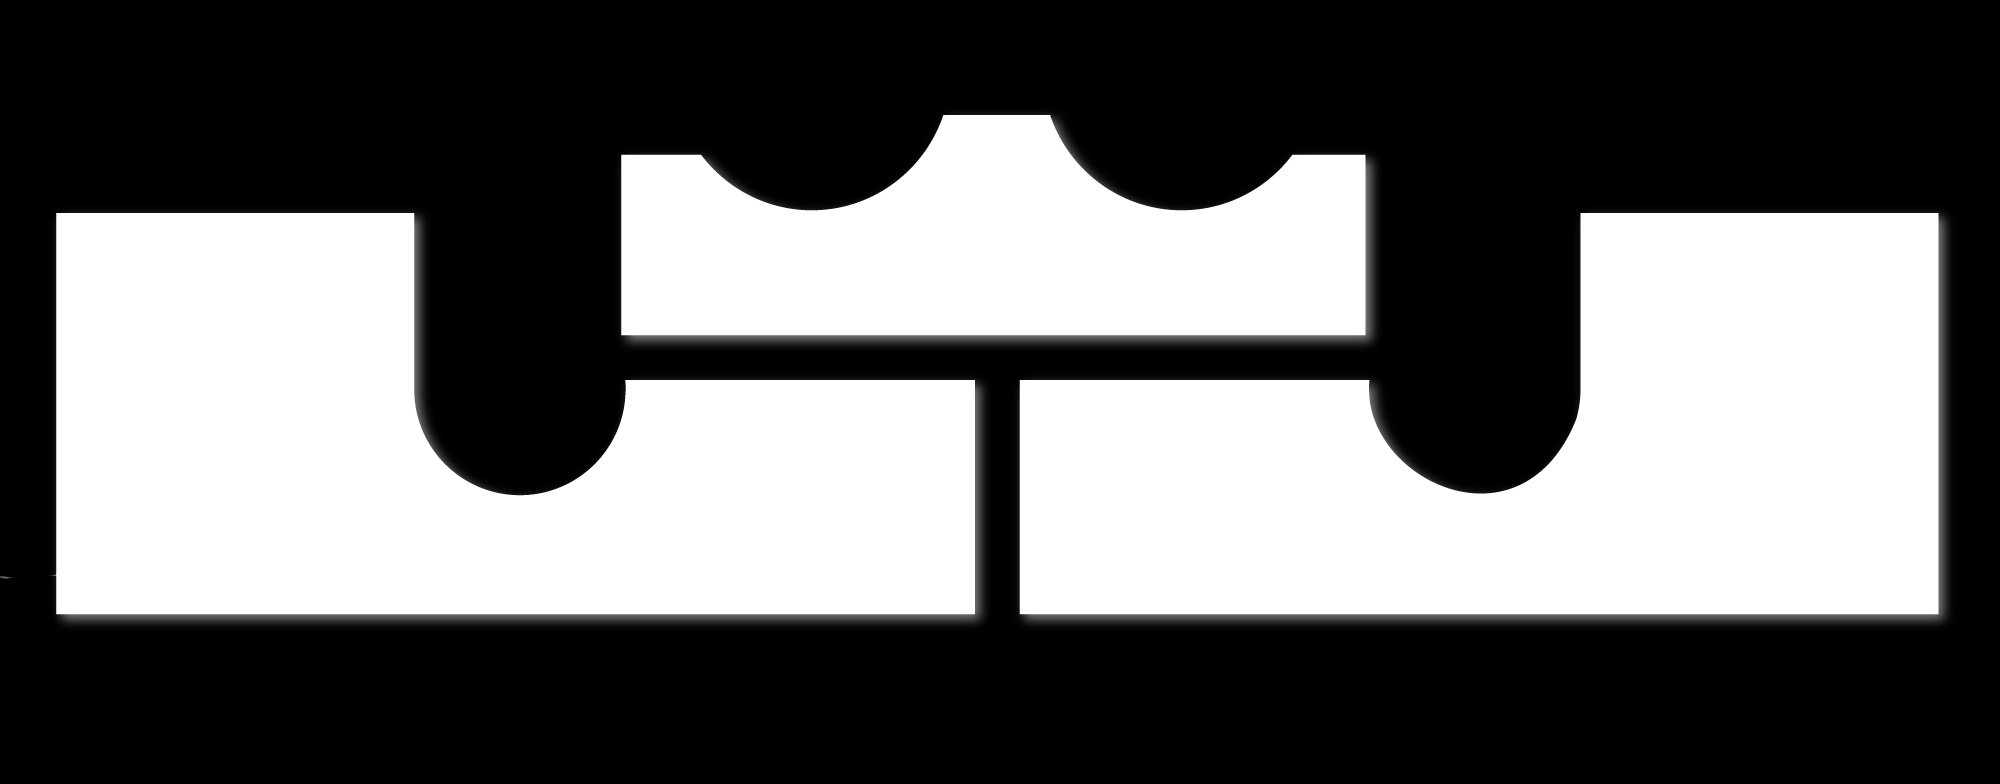 nike crown logo